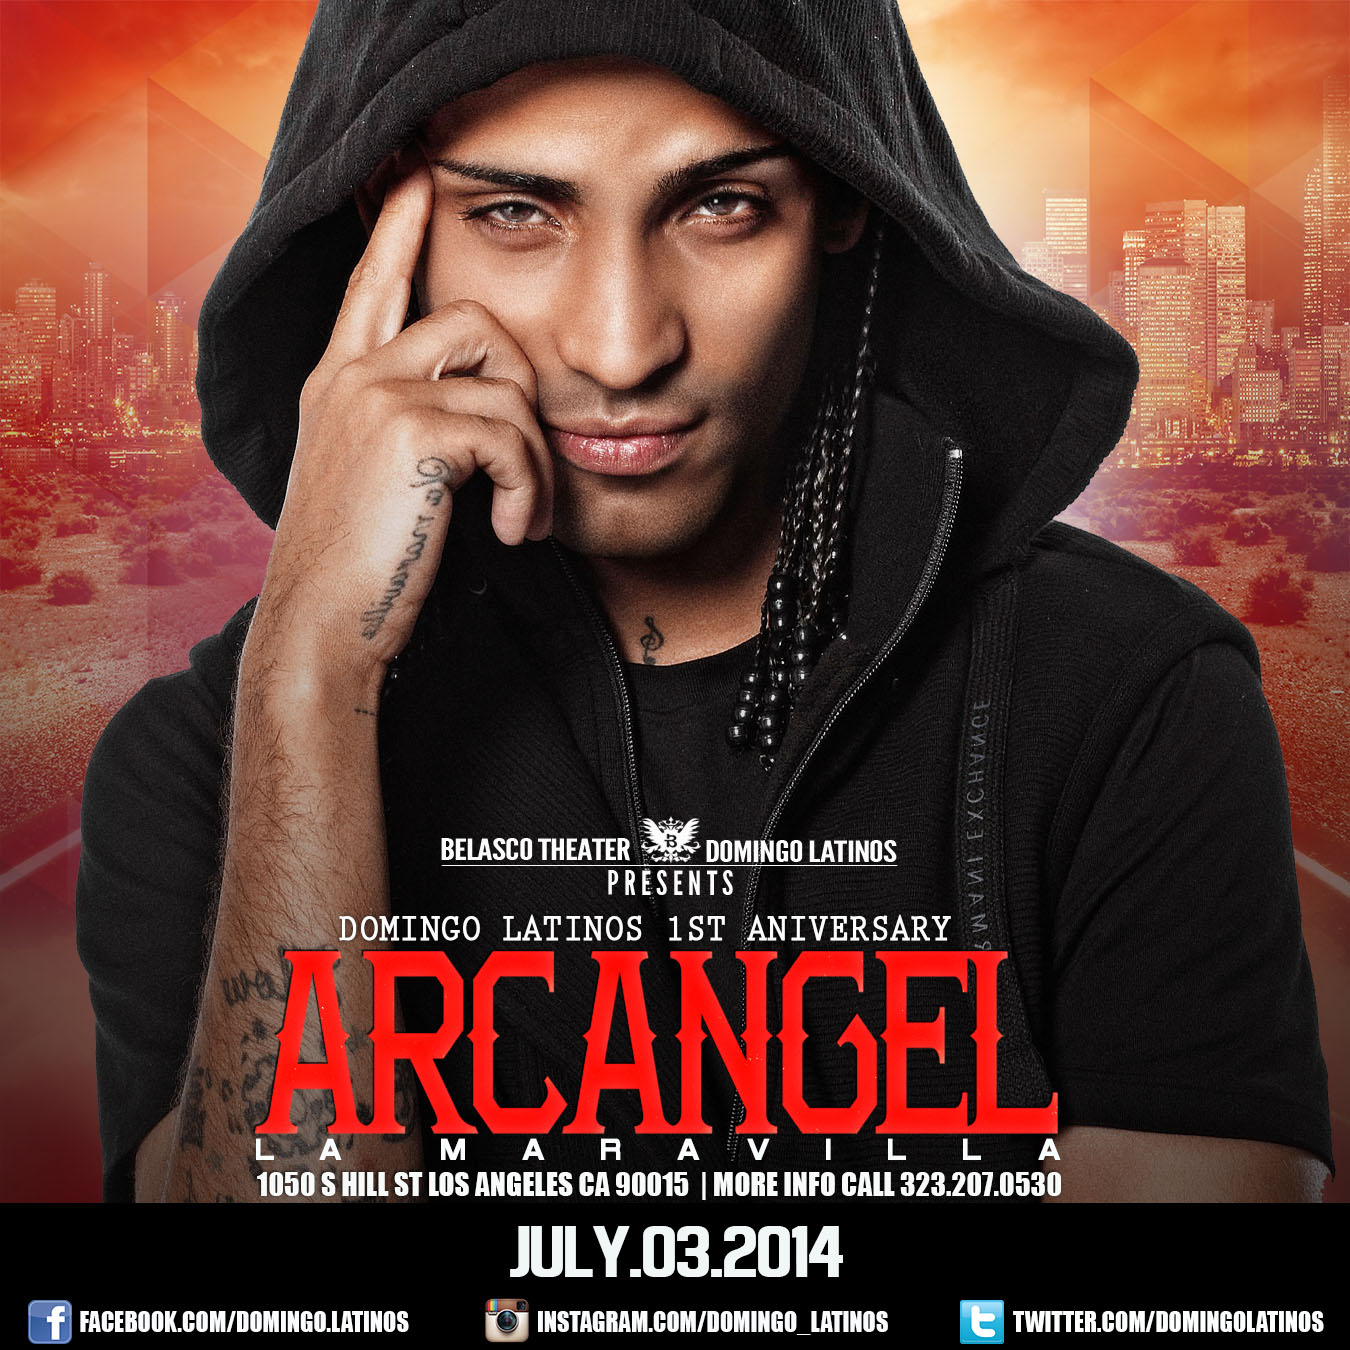 Arcangel Live in Concert Tickets The Belasco on July 03 2014 in LA